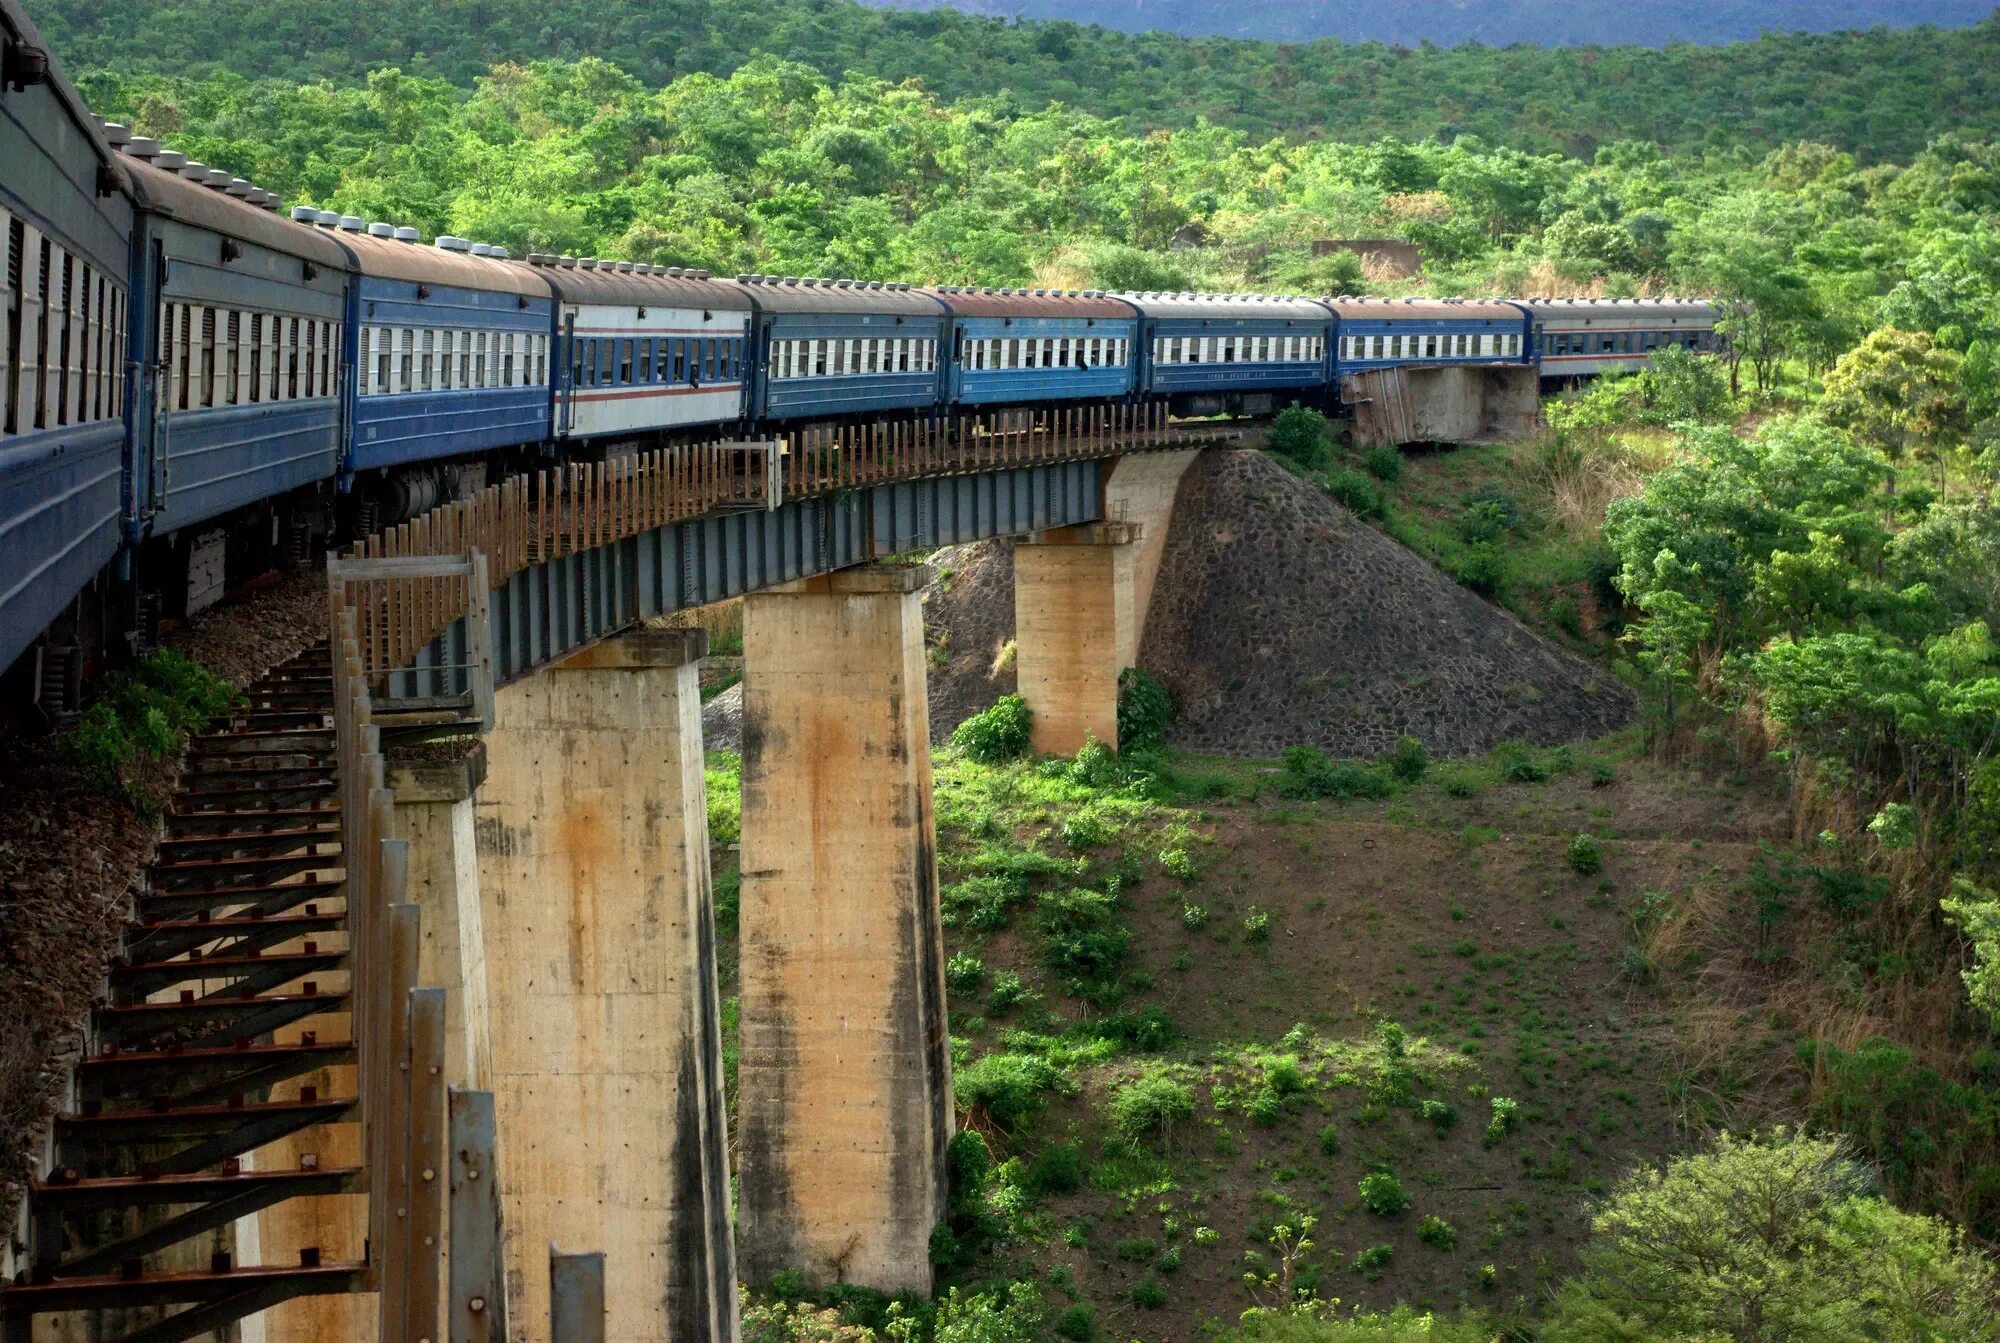 Железные дороги африки. Железная дорога Тазара. Железные дороги Танзании. Танзамская железная дорога. Железная дорога Тазара в Замбии.